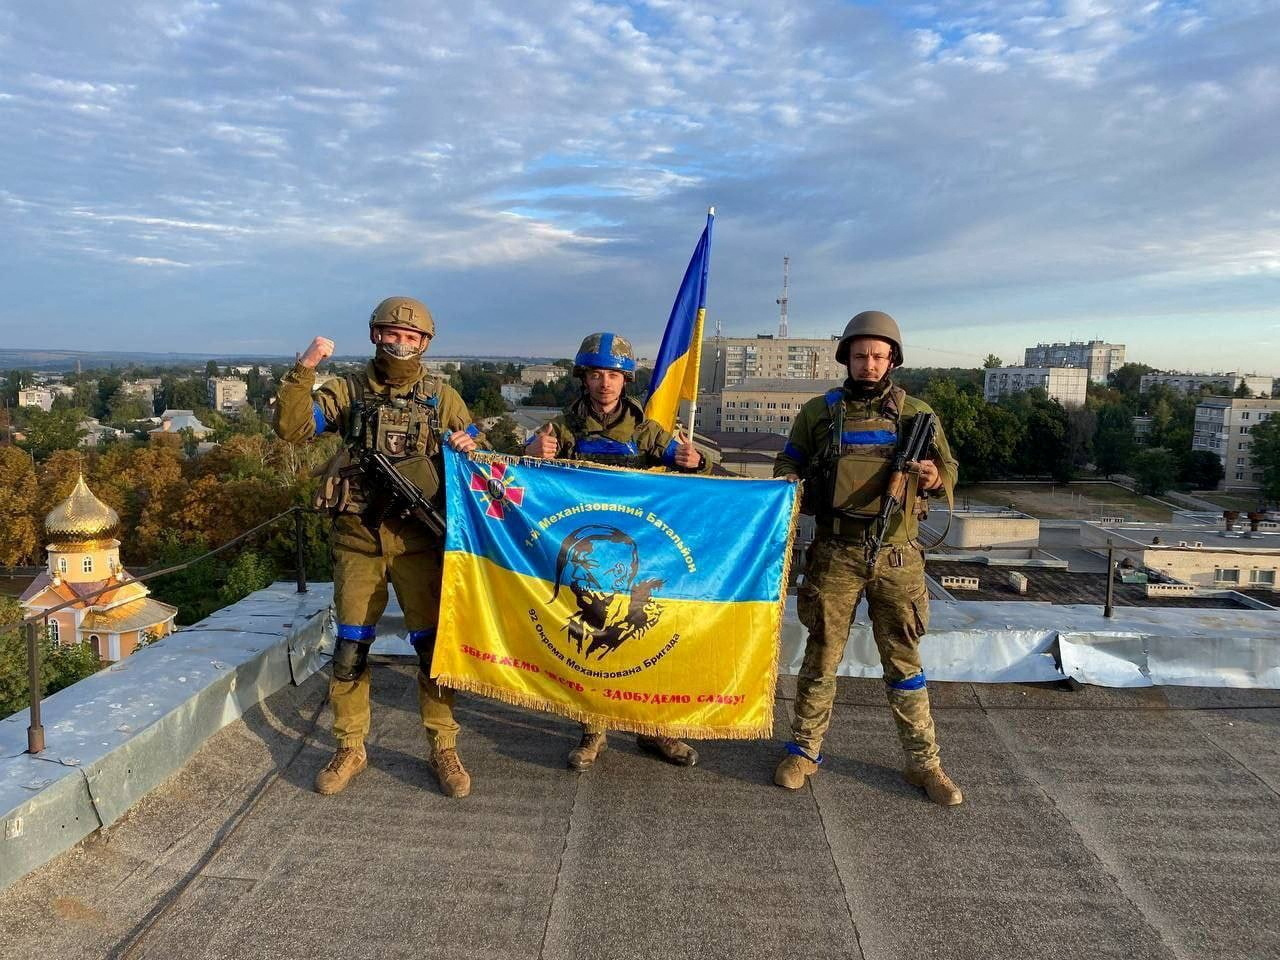 Chiến sự Ukraine: Hình ảnh chiến sự Ukraine sẽ cho bạn thấy sự dũng cảm và tinh thần đấu tranh của những người lính trên chiến trường. Nó còn thể hiện sự đoàn kết và sự tương thân tương ái của con người trong cả Nga lan truyền. Hình ảnh này sẽ cho bạn thấy lý do tại sao chúng ta cần cùng nhau chống lại những sự kiện khủng bố và xây dựng một thế giới tốt đẹp hơn.